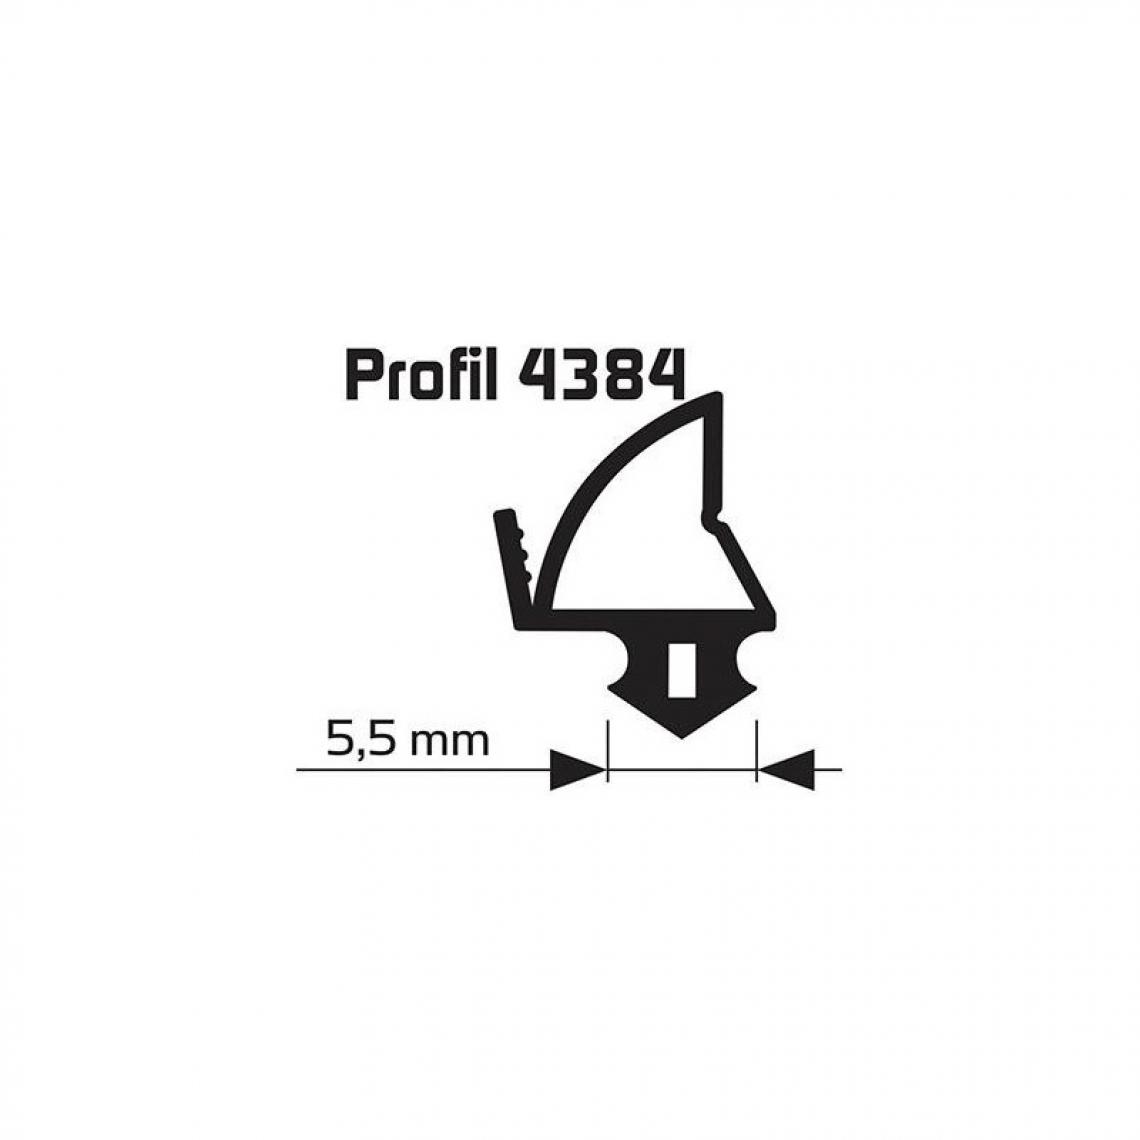 marque generique - Joint de feuillure d'ouvrant noir Profil 25m 4384 pour fenÄtres et portes en plastique - Visserie